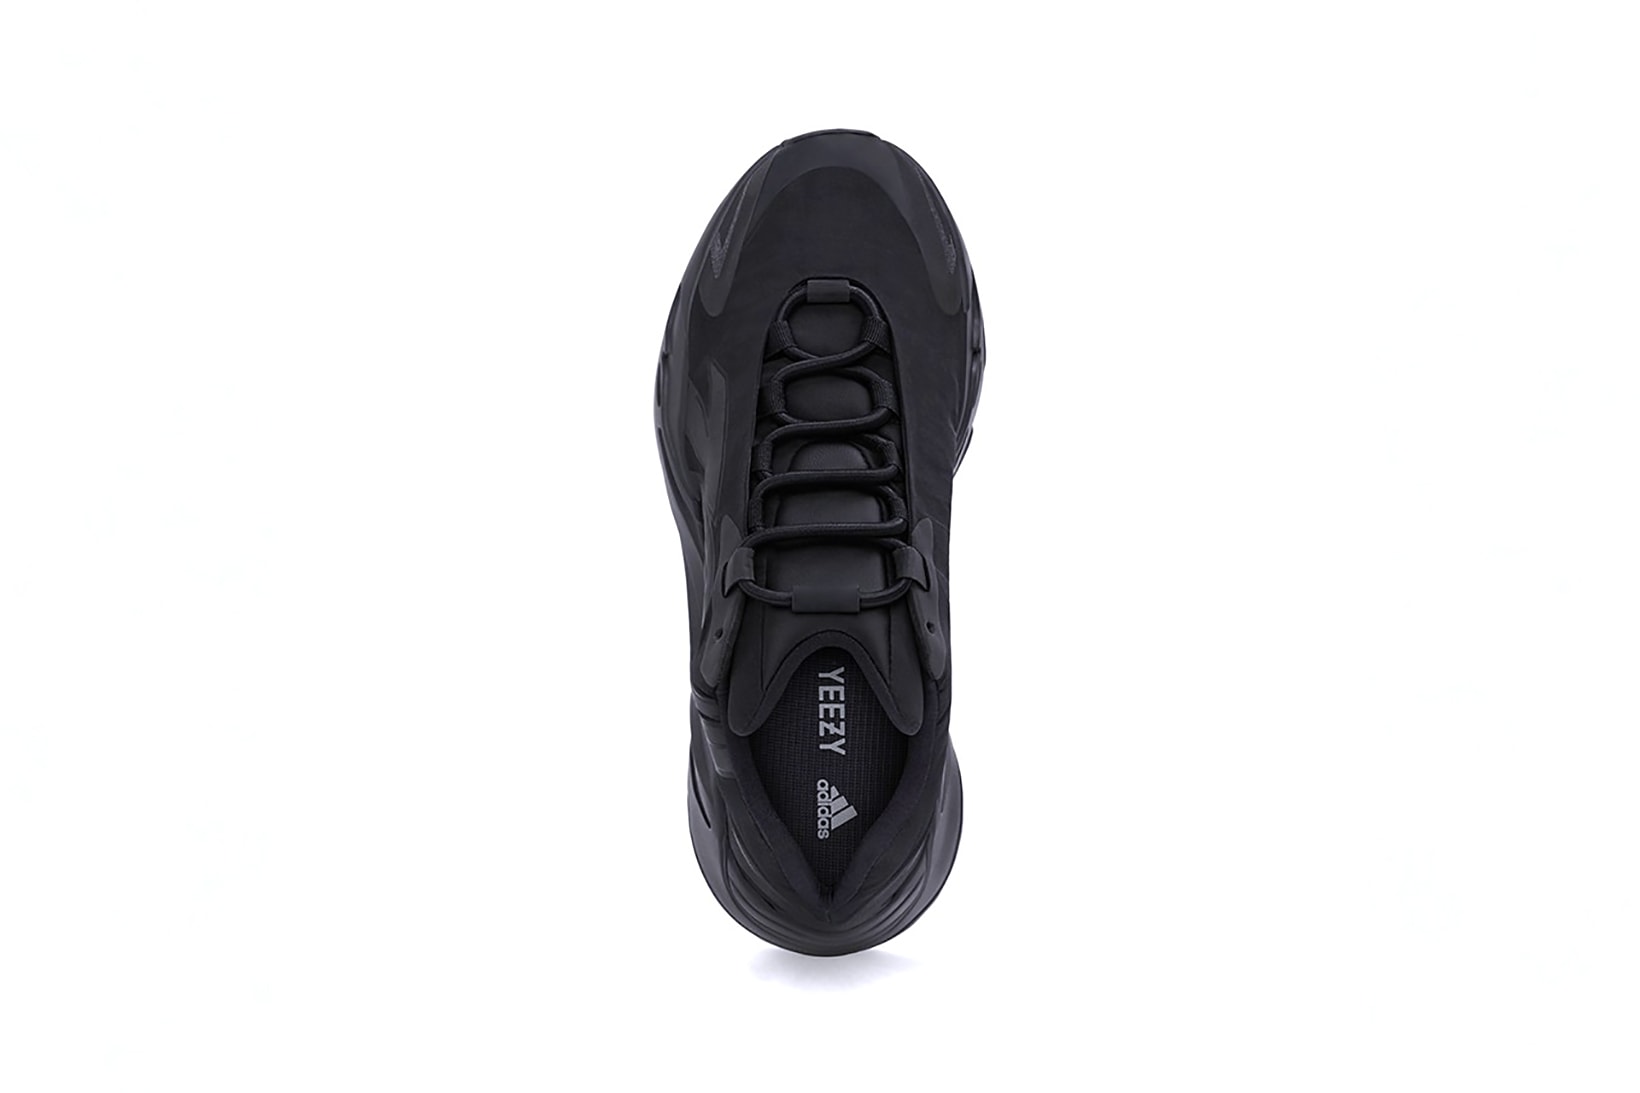 adidas kanye west yeezy boost 700 mnvn sneakers triple black colorway shoes footwear sneakerhead